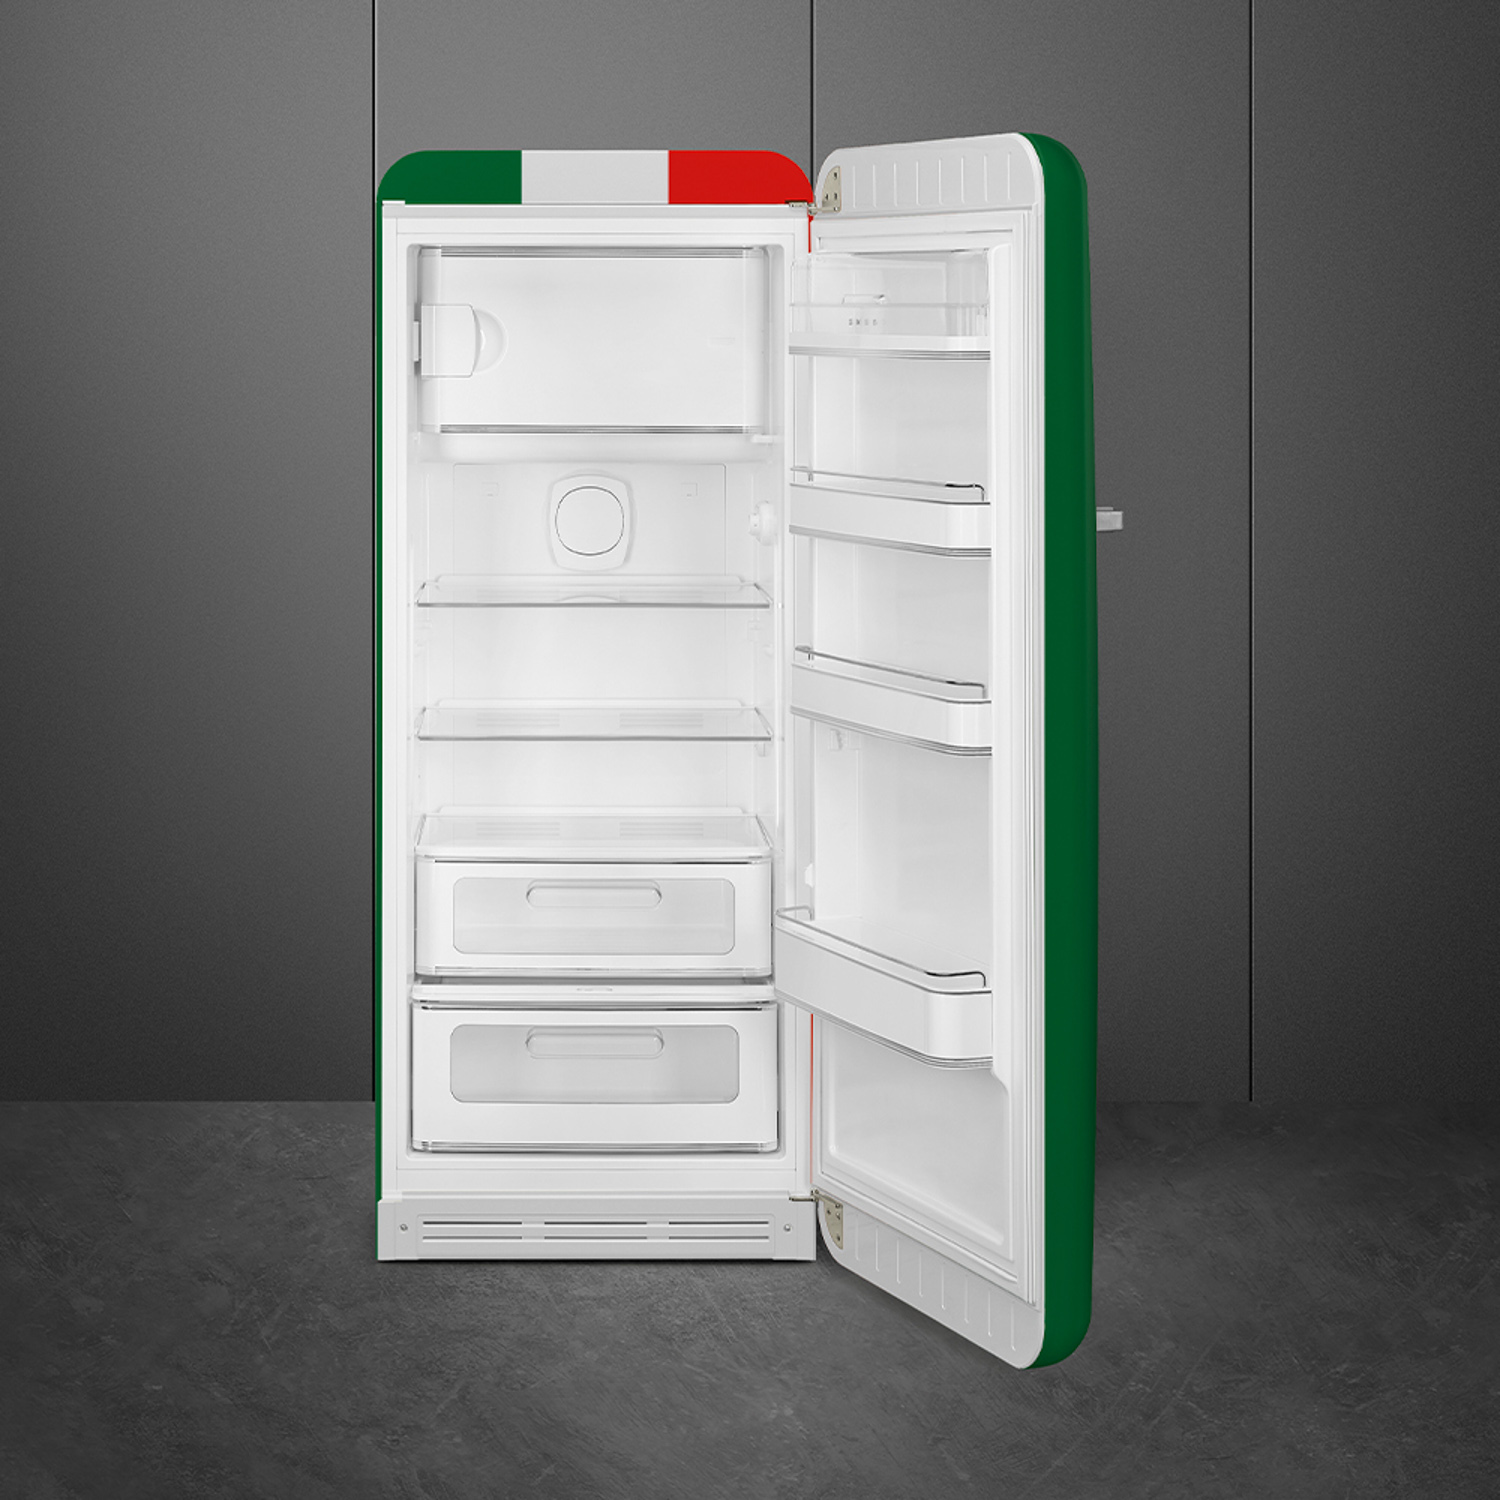 Thiết kế các ngăn tủ bên trong tủ lạnh SMEG, cửa đơn, độc lập, 50’S STYLE FAB28RDIT5 535.14.537